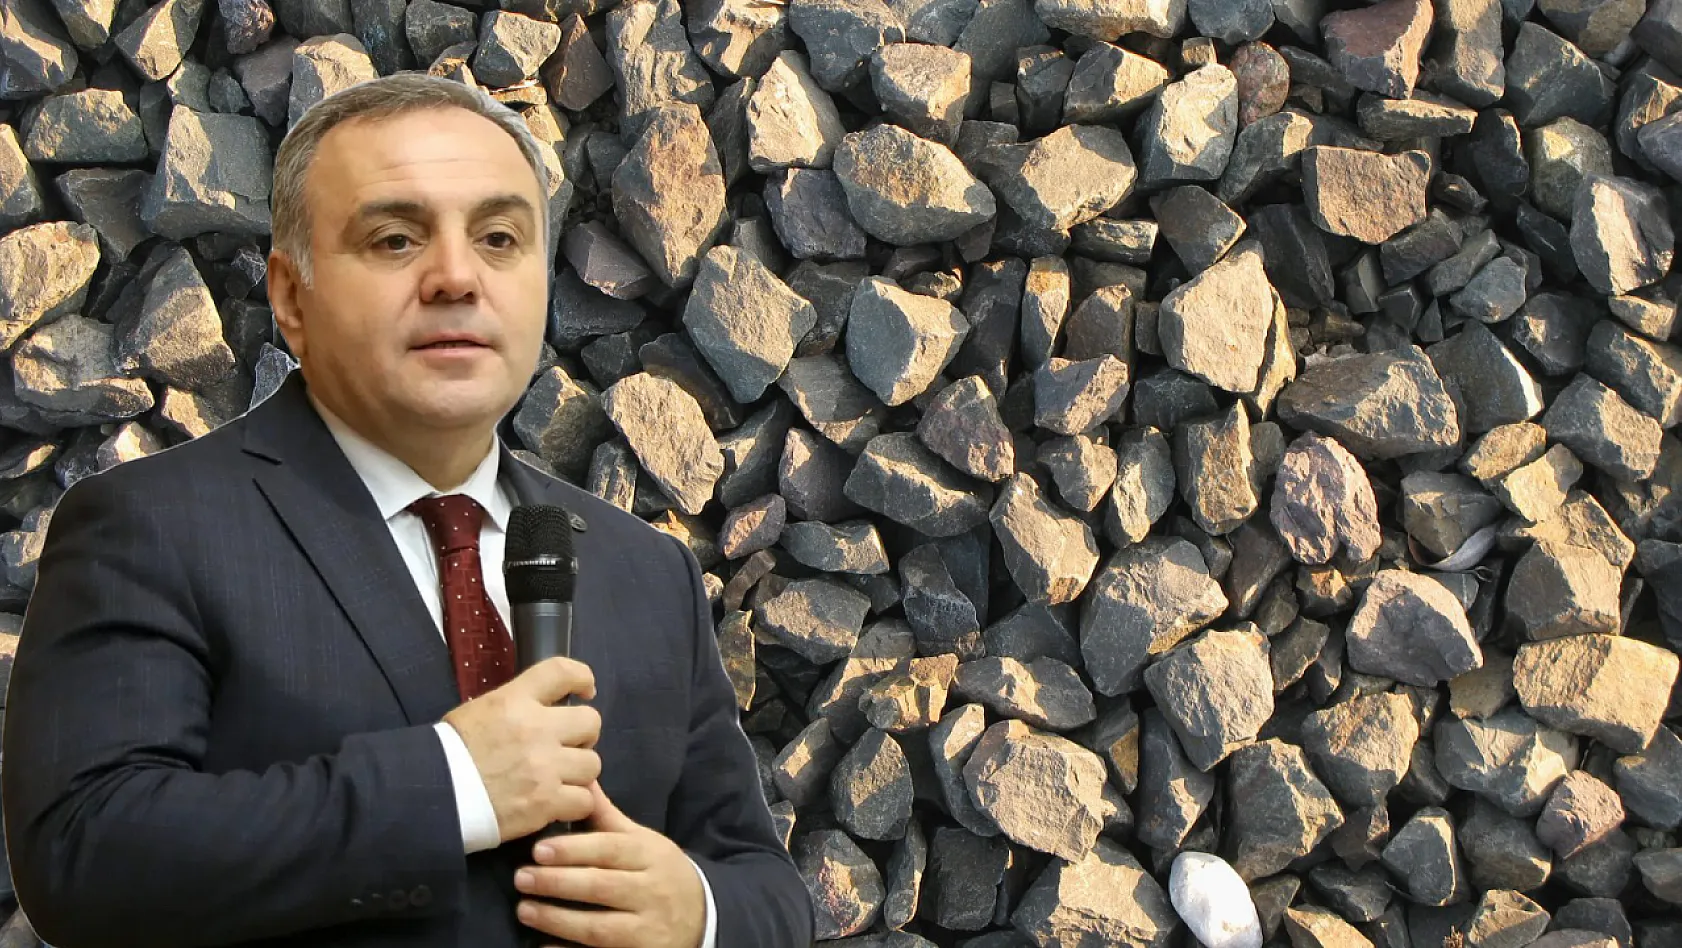 Topladığı küçük taşlar Erciyes Üniversitesi Rektörü'nün hayatını değiştirdi!